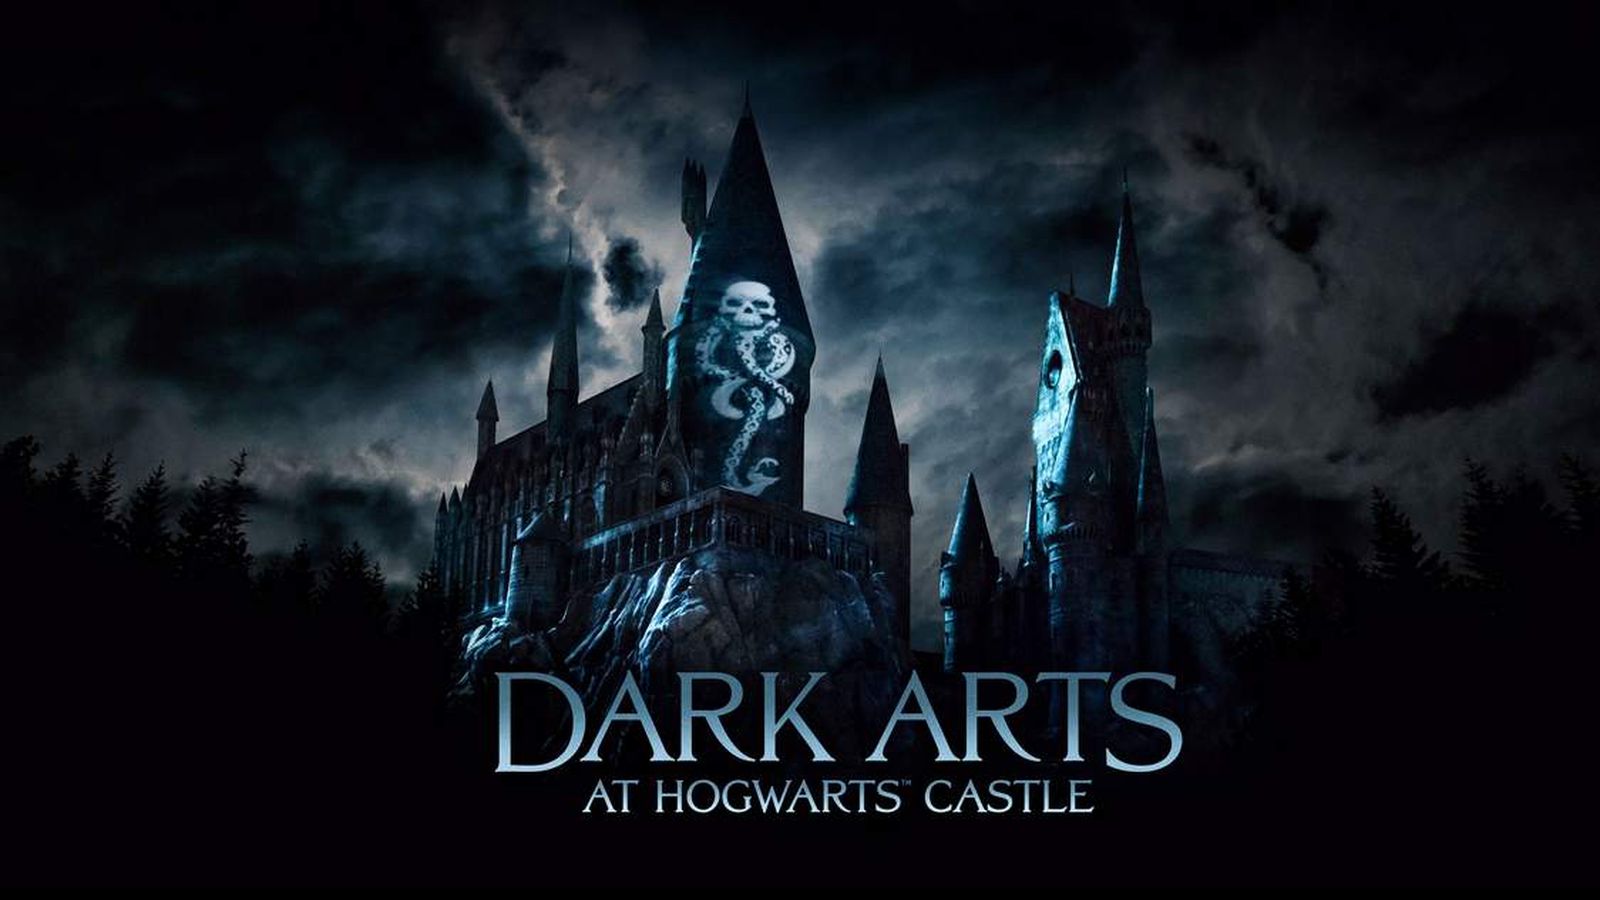 Harry Potter's worst nightmares will loom in new Universal Studios show